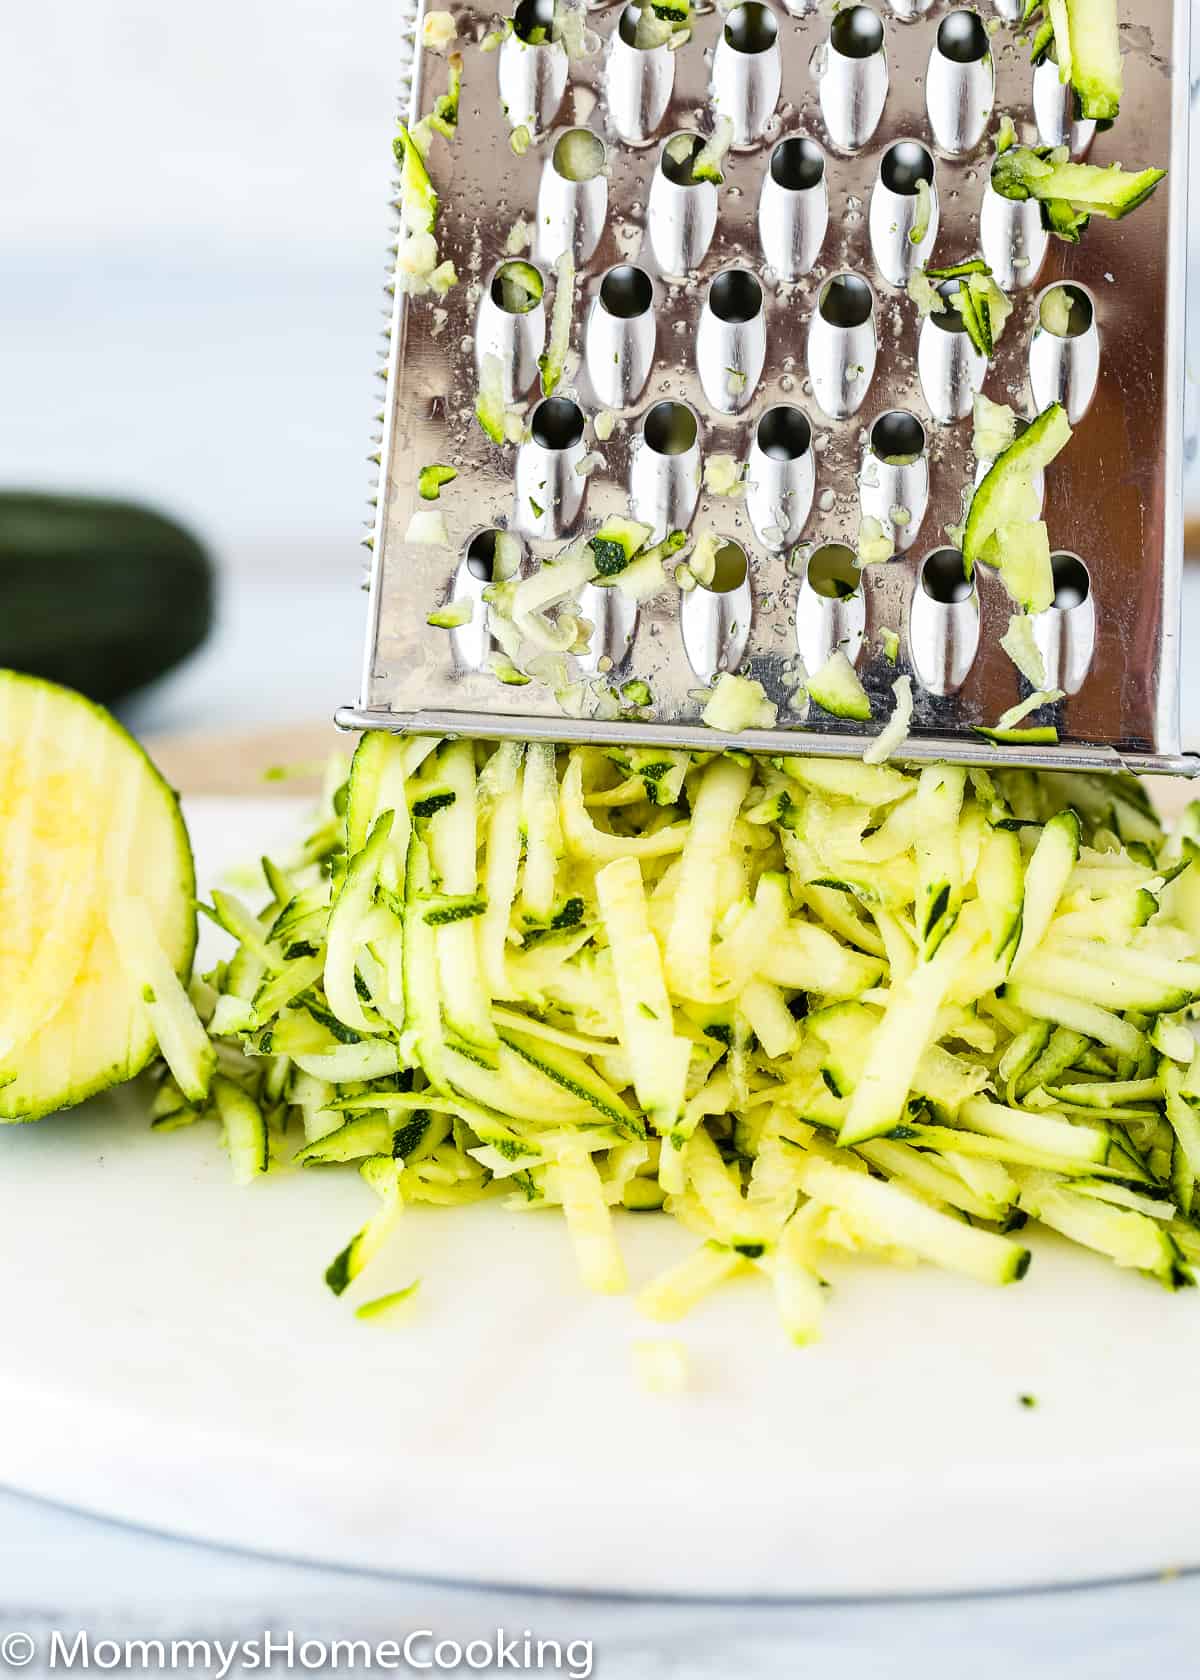 Shredded zucchini over a cutting board